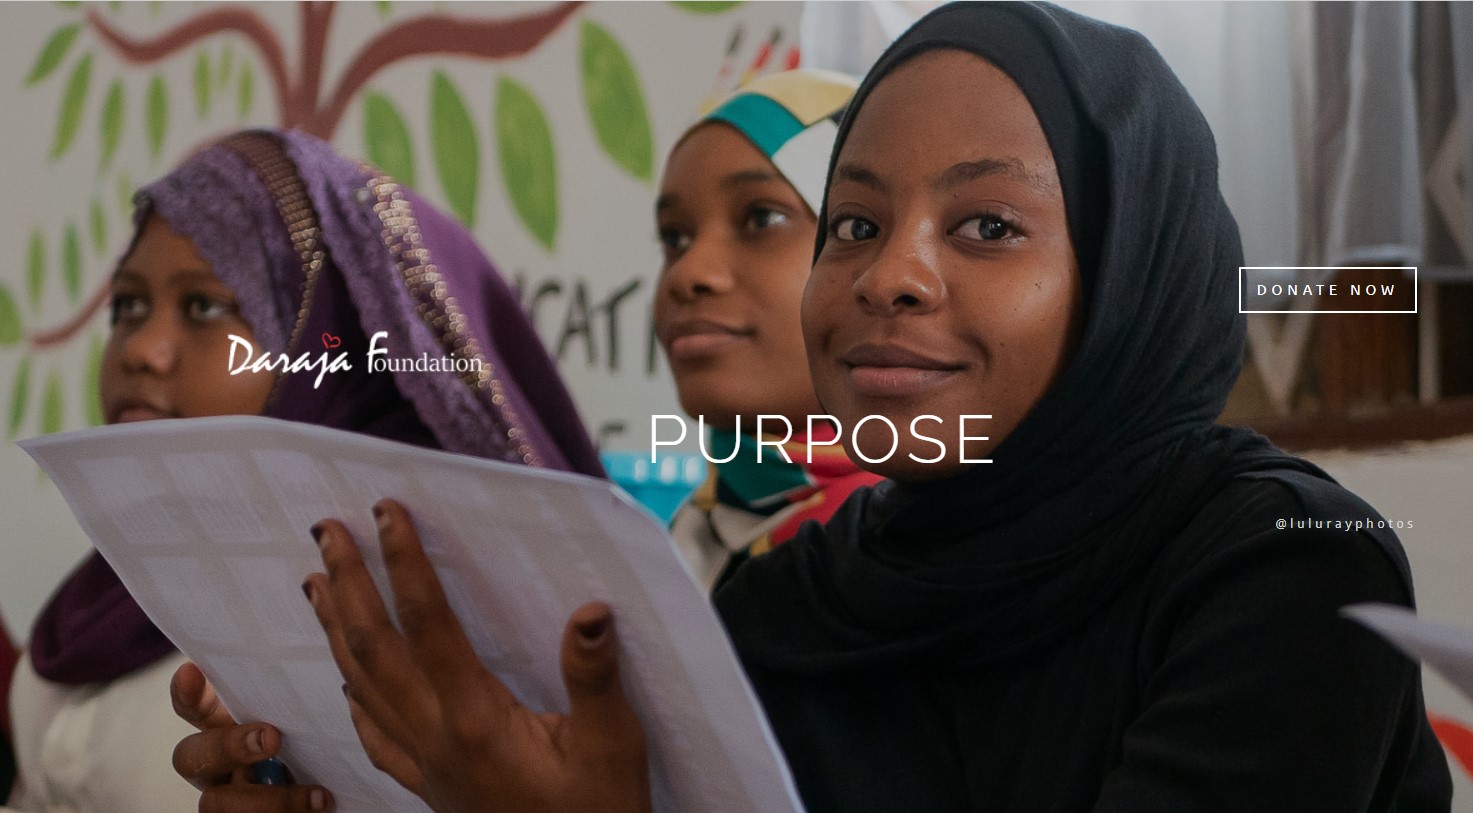 Madhumuni: Daraja Foundation in Zanzibar - Kuwapa vijana familia na maisha ya baadae